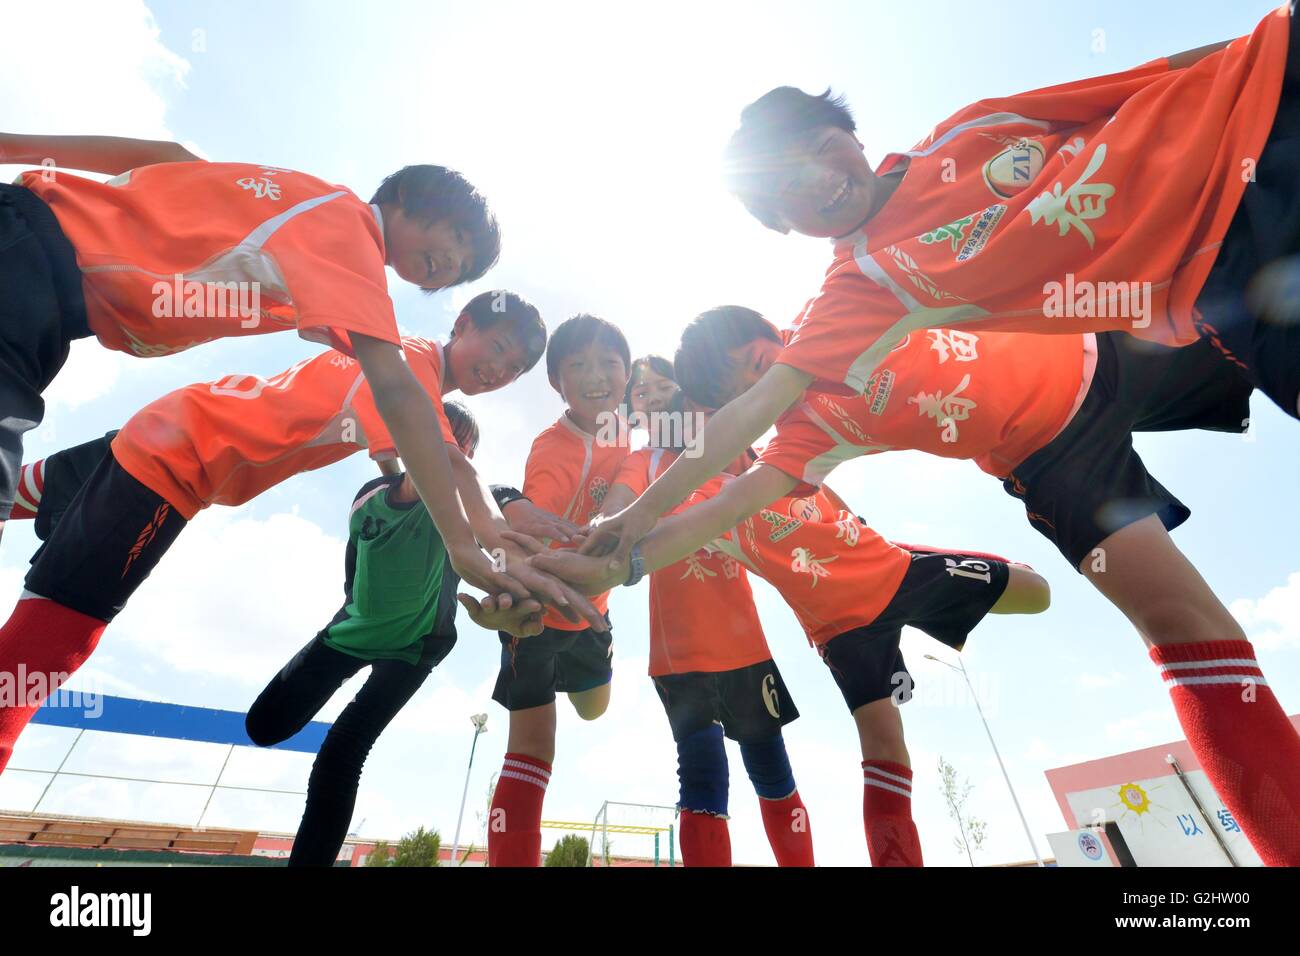 (160601)--LANZHOU, 1. Juni 2016 (Xinhua)--junge Mädchen der Schule Team jubeln vor der Teilnahme in einem Football-Spiel am Zhonglianchuan Primary School Fußball spielen nach der Schule in Yuzhong Grafschaft, Nordwesten Chinas Provinz Gansu, 31. Mai 2016. Fußball bereichert Kinder Alltag an der Schule in den Bereichen ländliche Plateau auf einer Höhe von mehr als 2.300 Metern befindet. Viele Kinder haben die Möglichkeit zur Teilnahme an Fußball-Spiele in den großen Städten. Schulleiter Ma Anwu zu hoffen, dass Fußball mehr ländlichen Studenten Schritt aus den Bergen helfen könnte. Mittwoch markiert internationalen Kinder D Stockfoto